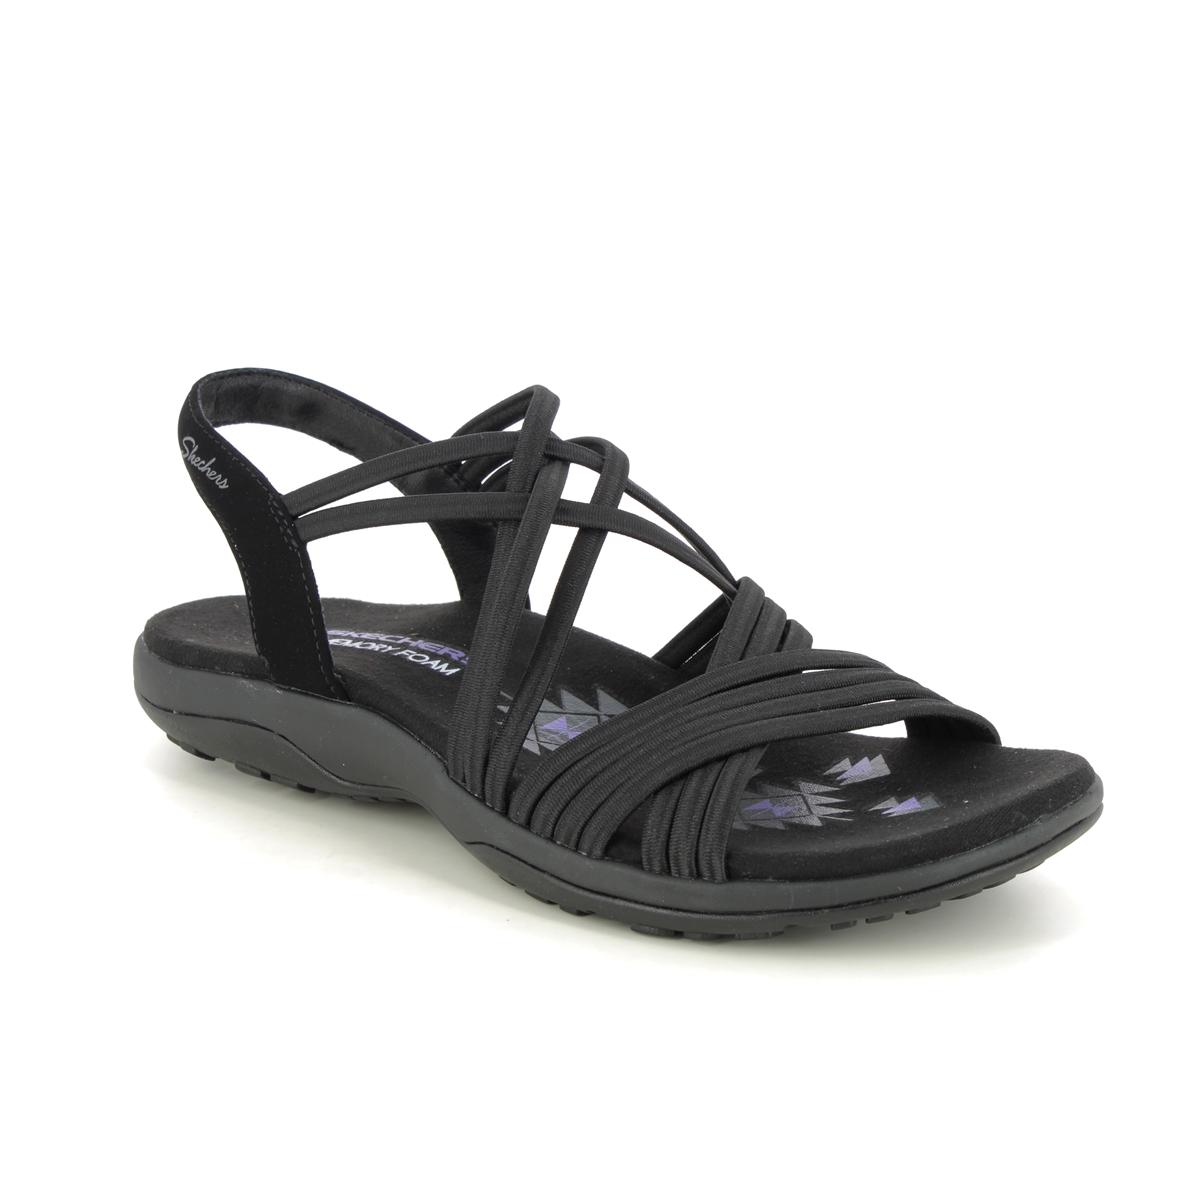 Skechers Reggae Slim Sunnyside BBK Black Womens Walking Sandals 163185 in a Plain Textile in Size 8